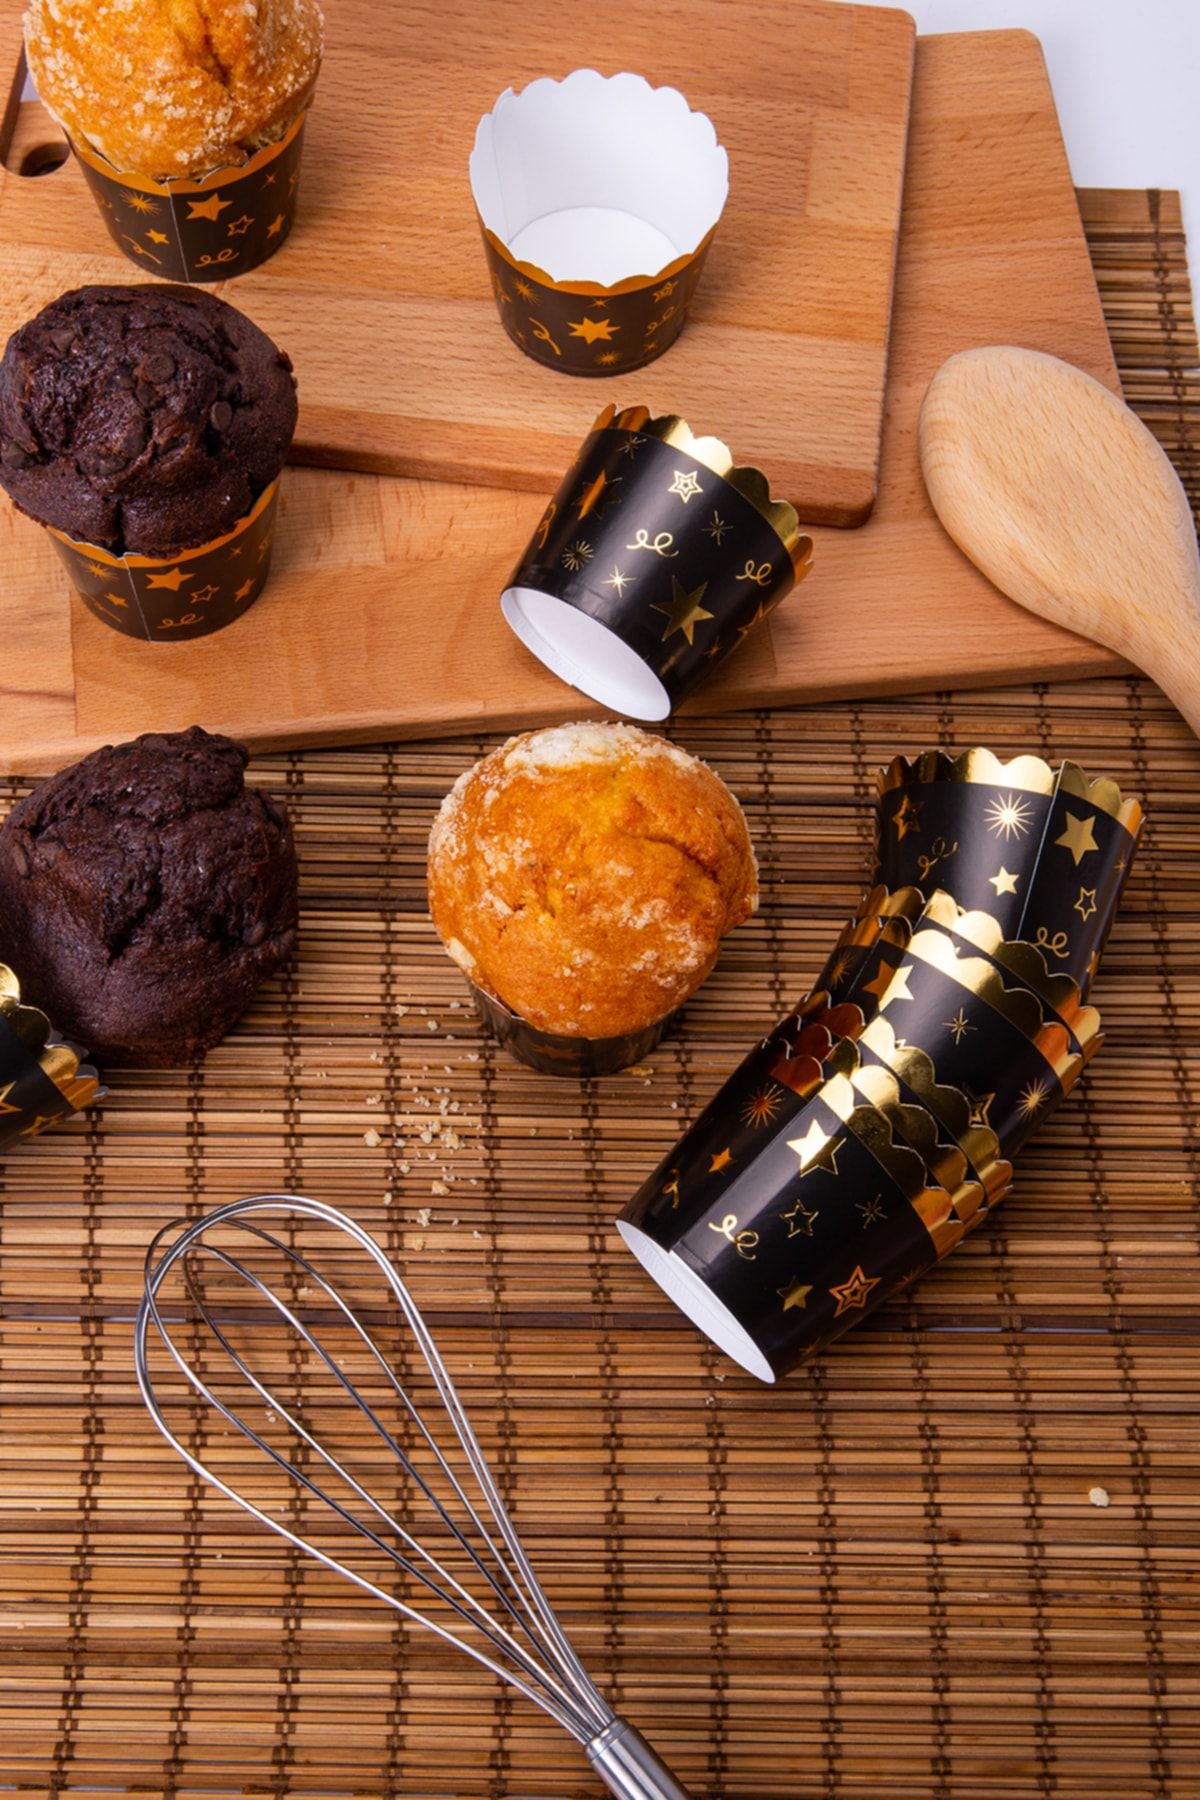 Huzur Party Store Gold Altın Yaldızlı Siyah 12'li Kek Kalıbı Yıldız Konfeti Detaylı Fırında Dağılmayan 6.5x5 Cm Muffin